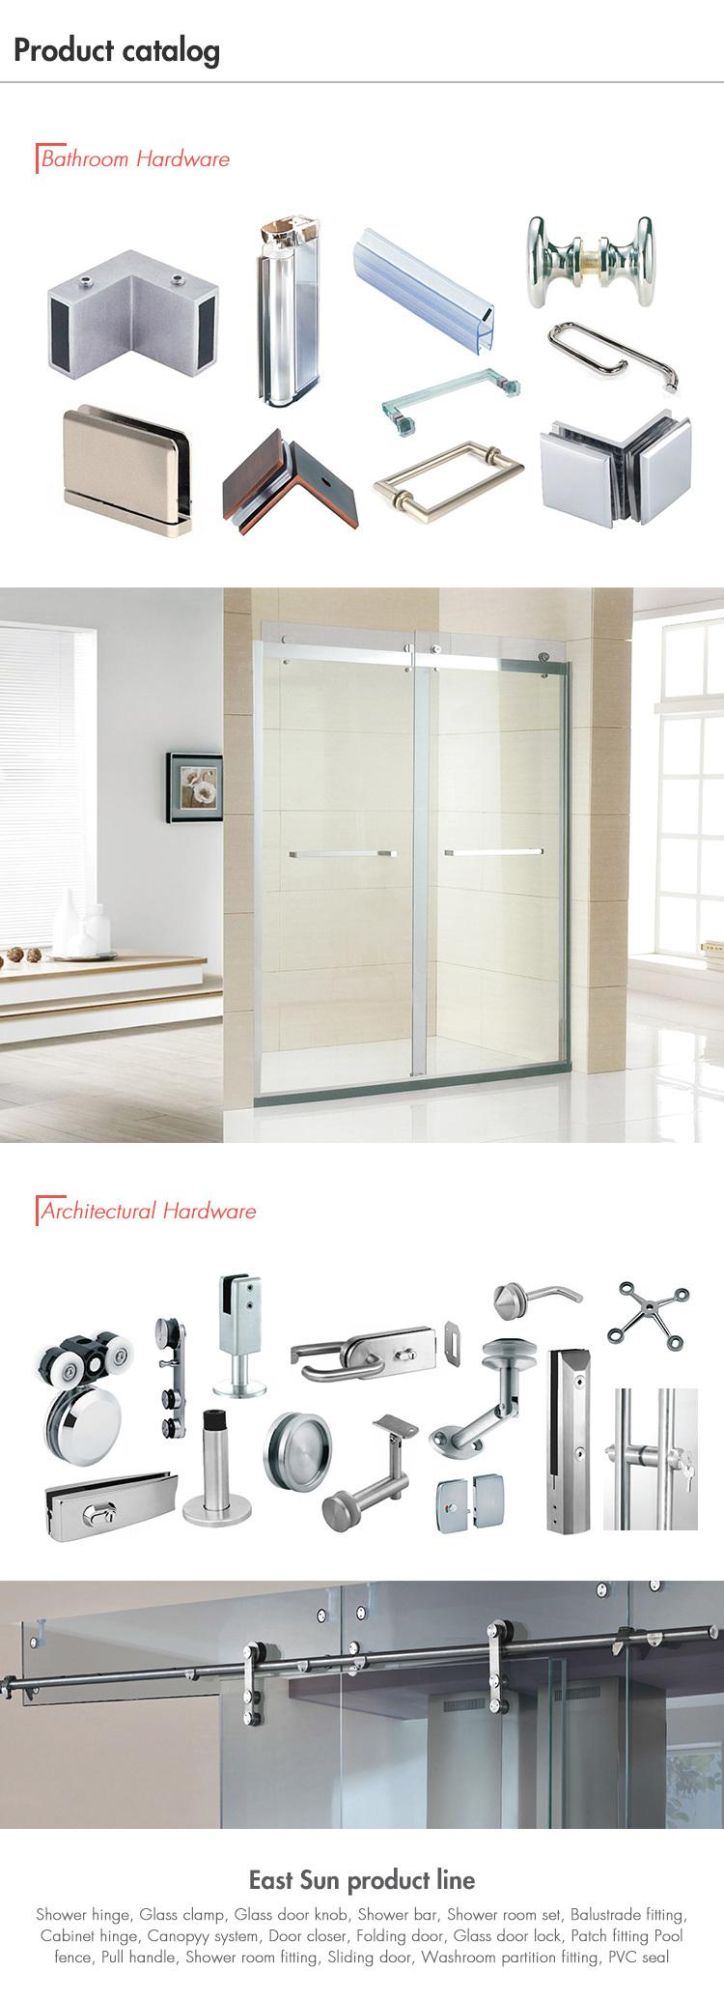 Europe Design, High Quality Aluminum Glass Door Hinge (EWH-201B)